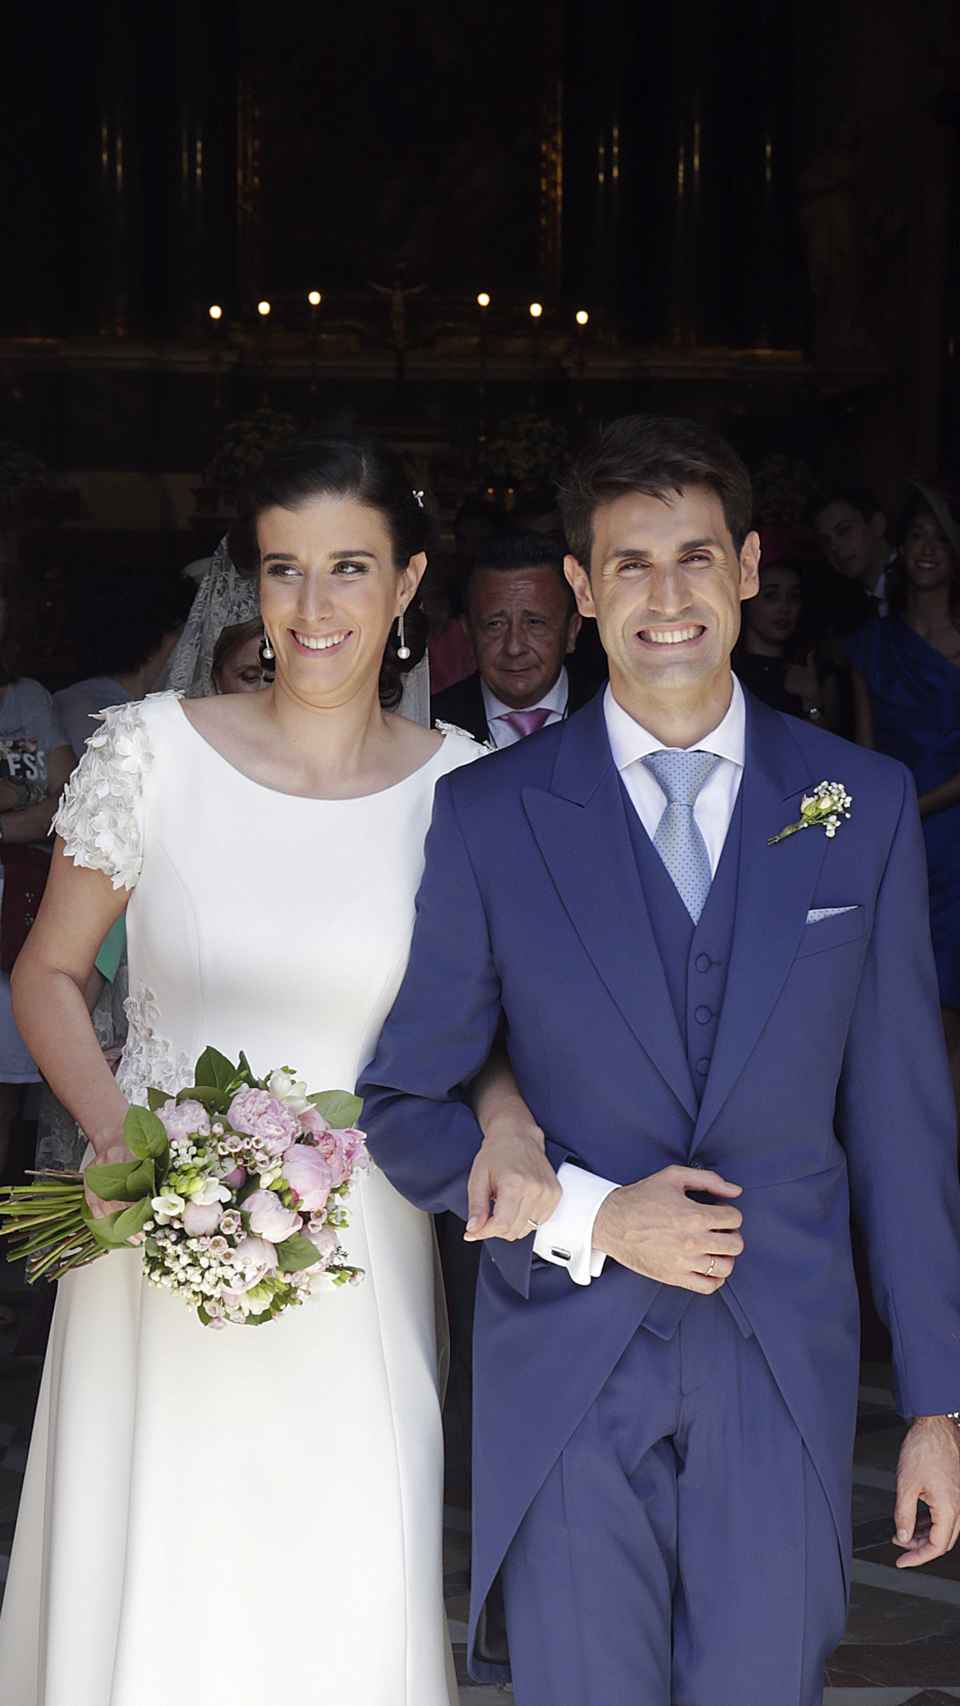 Blanca y Elu Moreno el día de su boda en 2017.